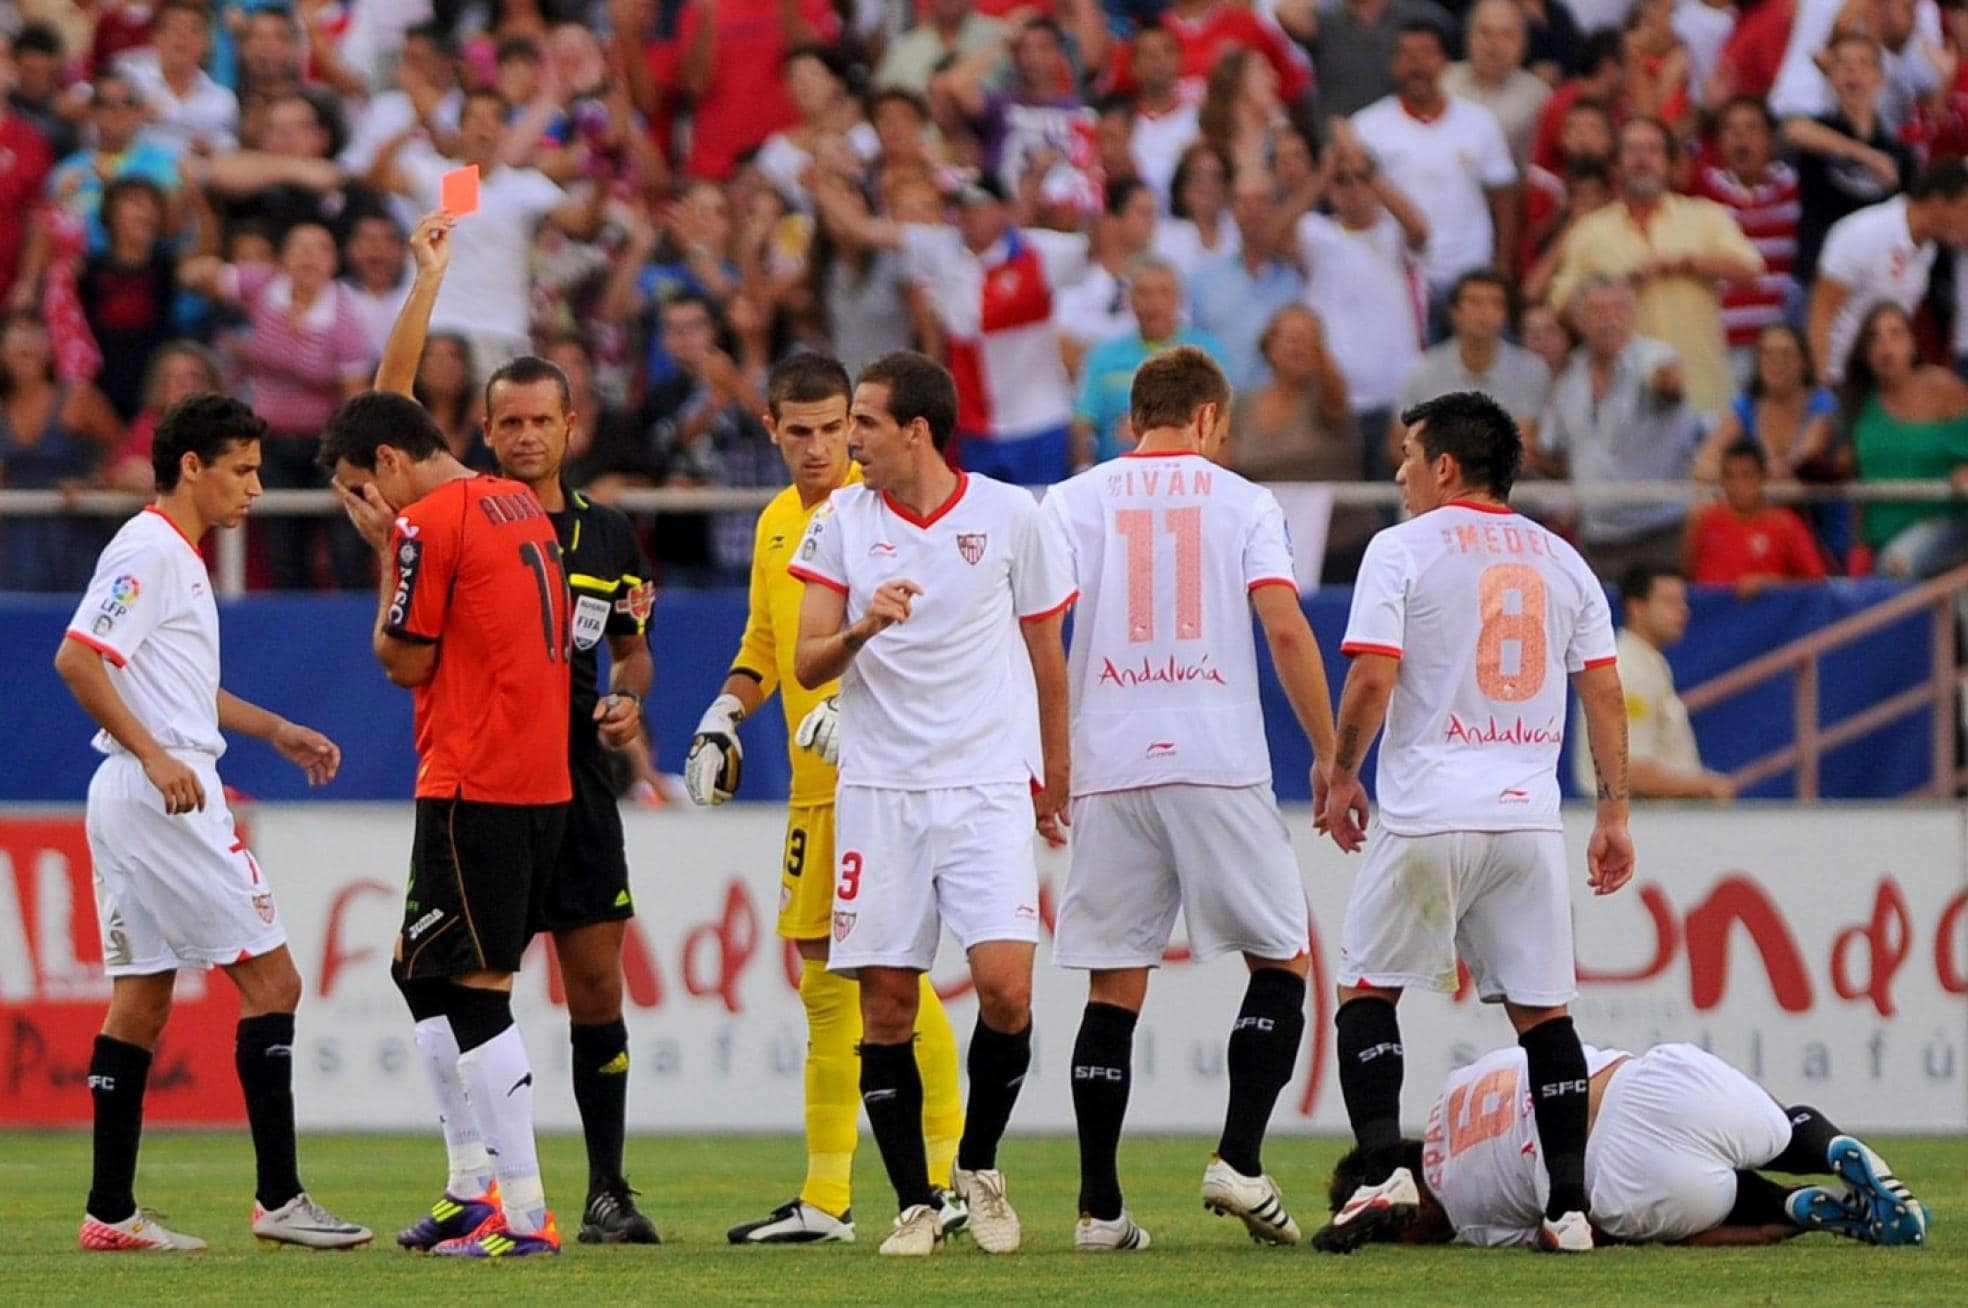 p
Provocación y roja. Aduriz, desolado tras la roja que le enseñó Muñiz Fernández en el Pizjuán (temporada 2011-12). afp